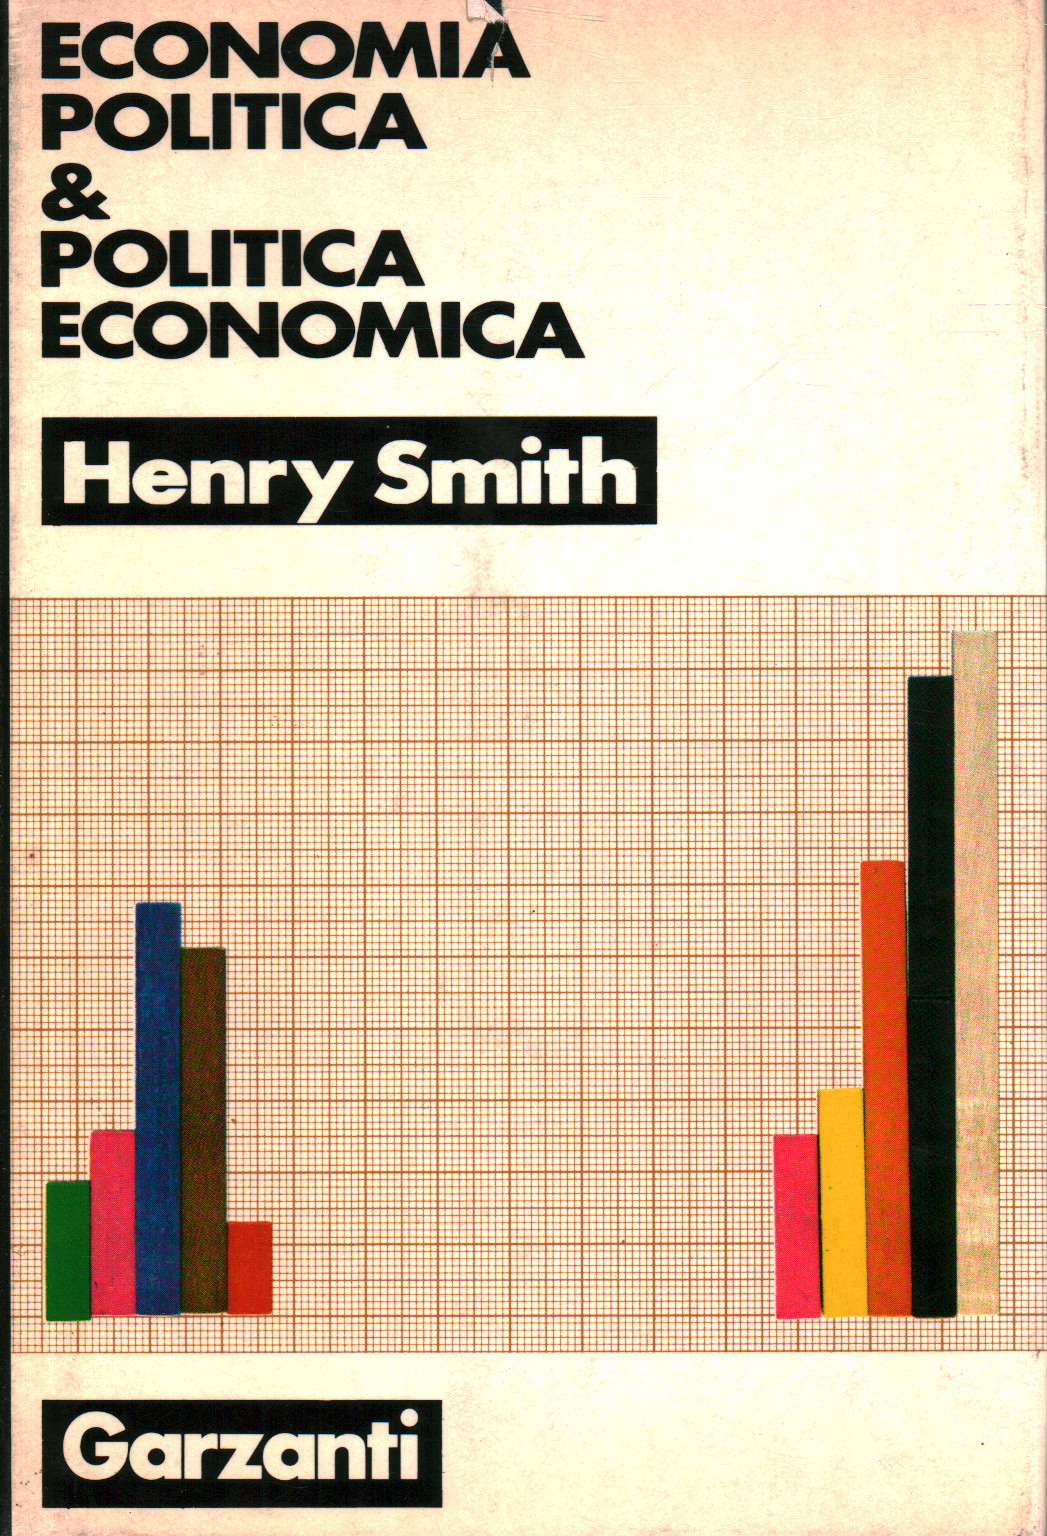 Economia politica & politica economica, s.a.